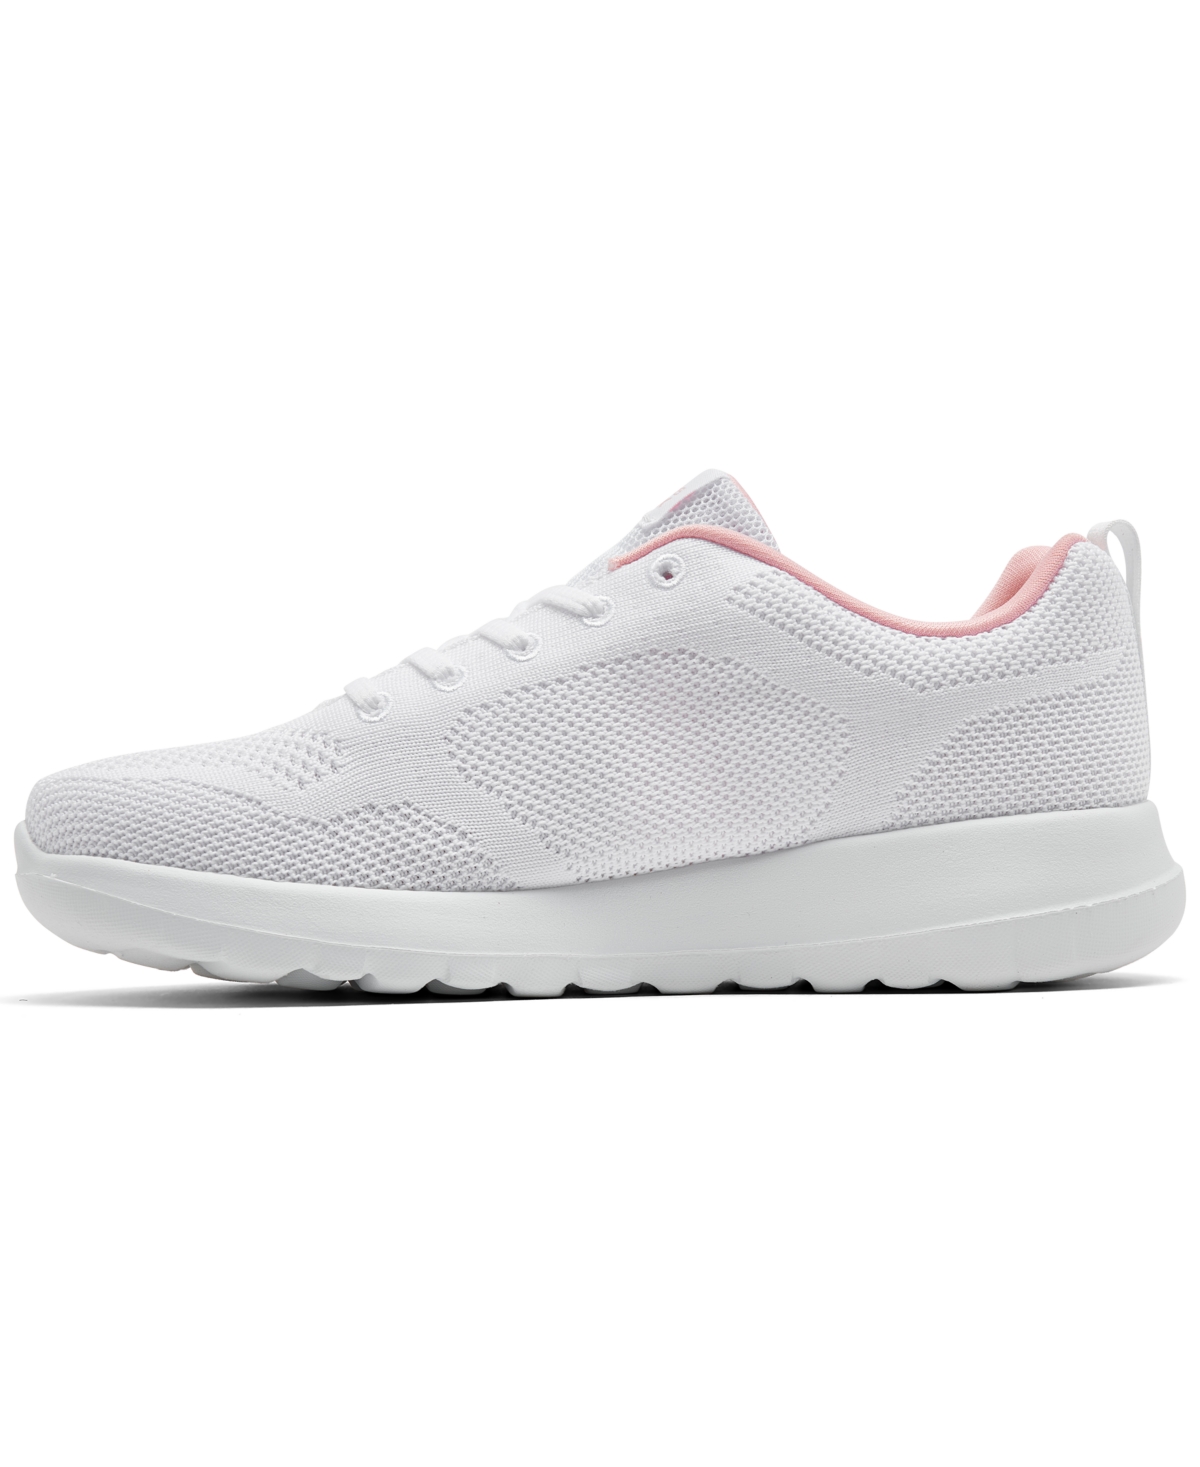 Shop Skechers Women's Go Walk Joy Lace Walking Sneakers From Finish Line In White,pink